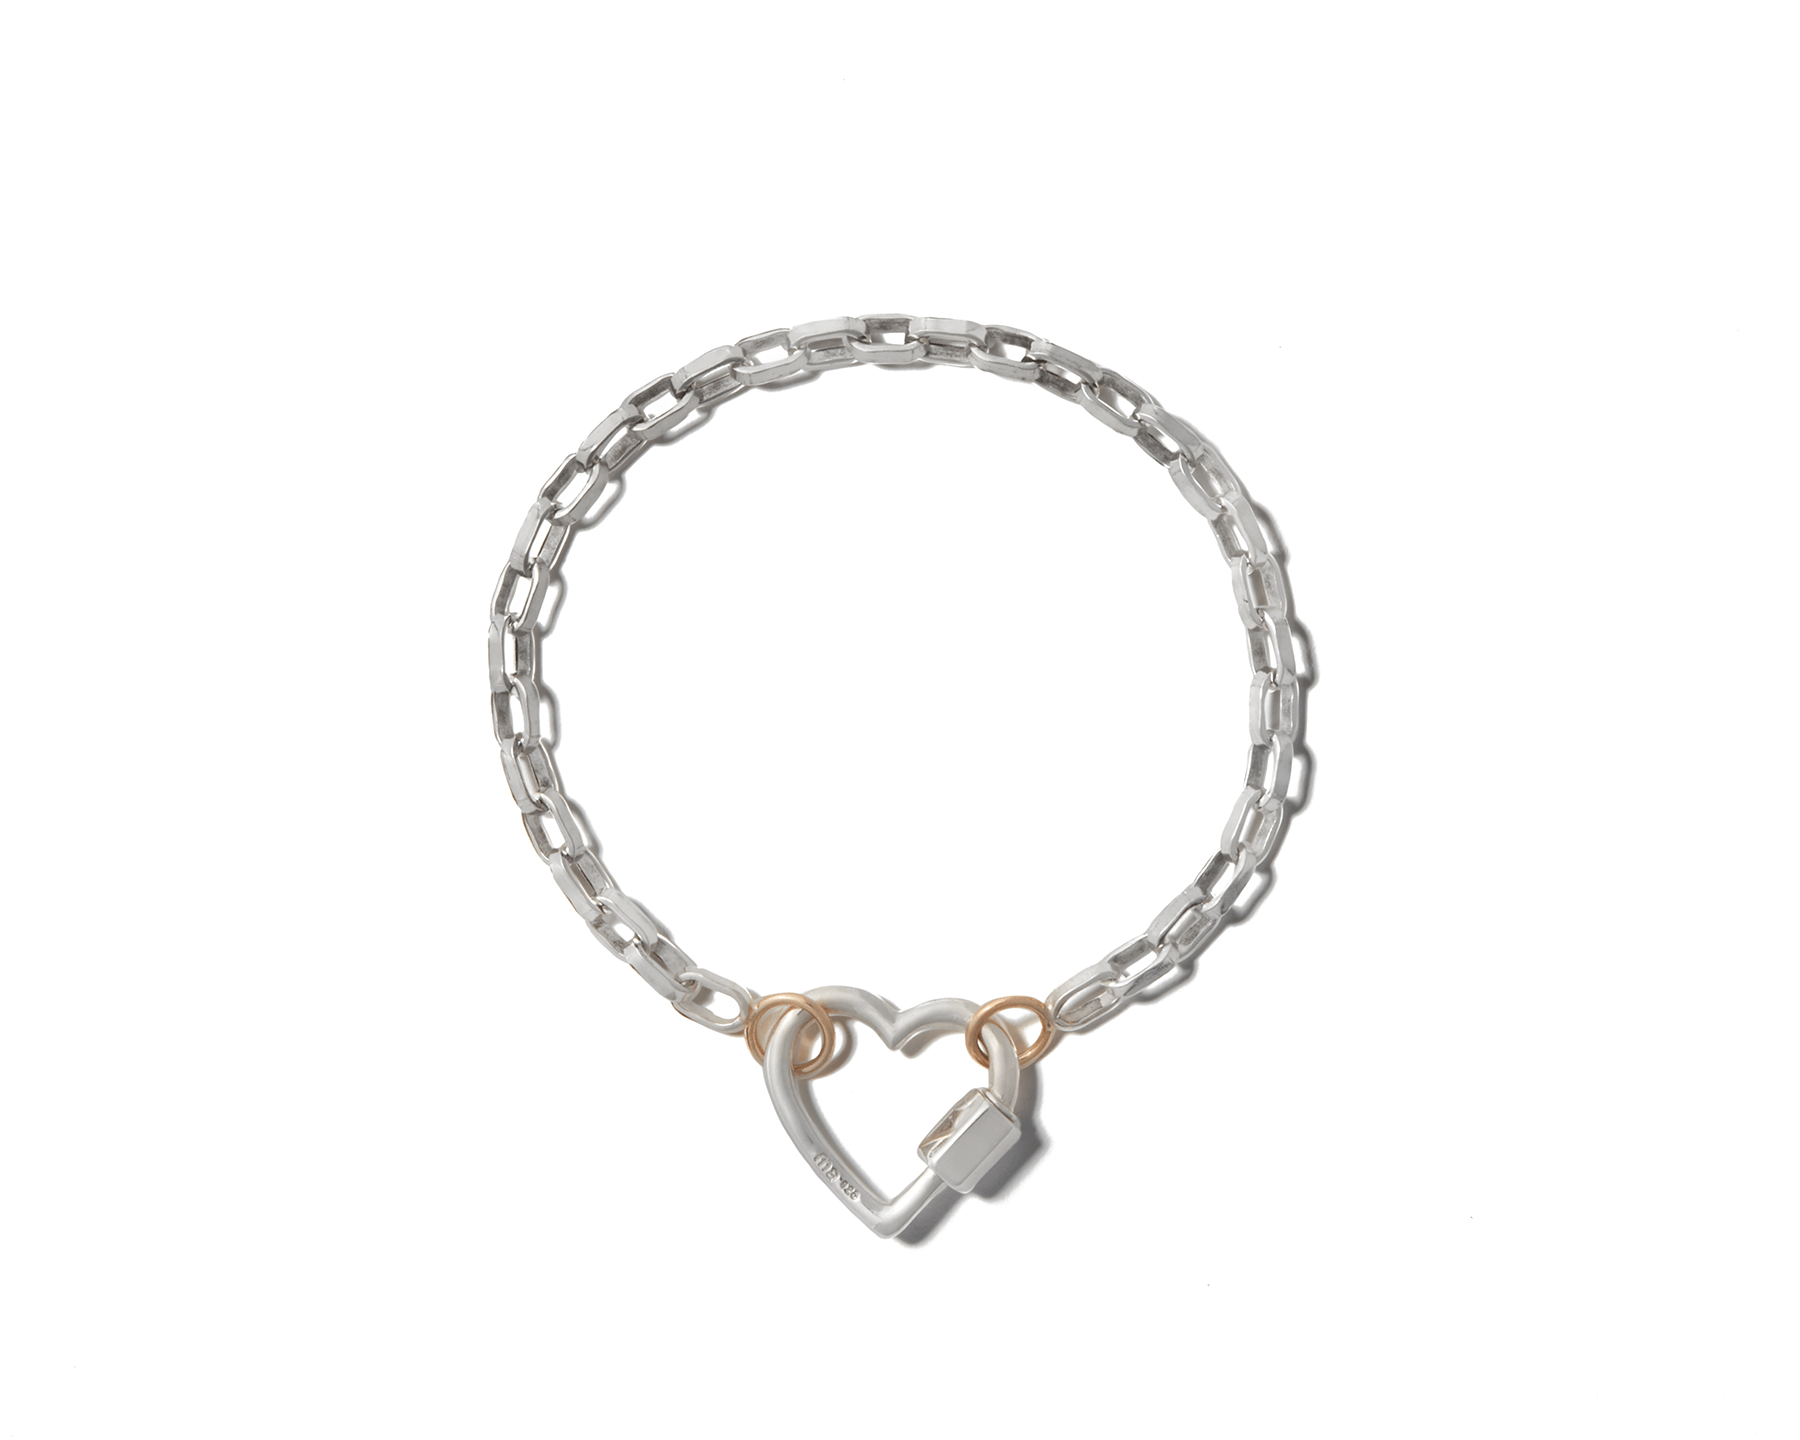 Sterling silver biker chain bracelet with silver heart lock